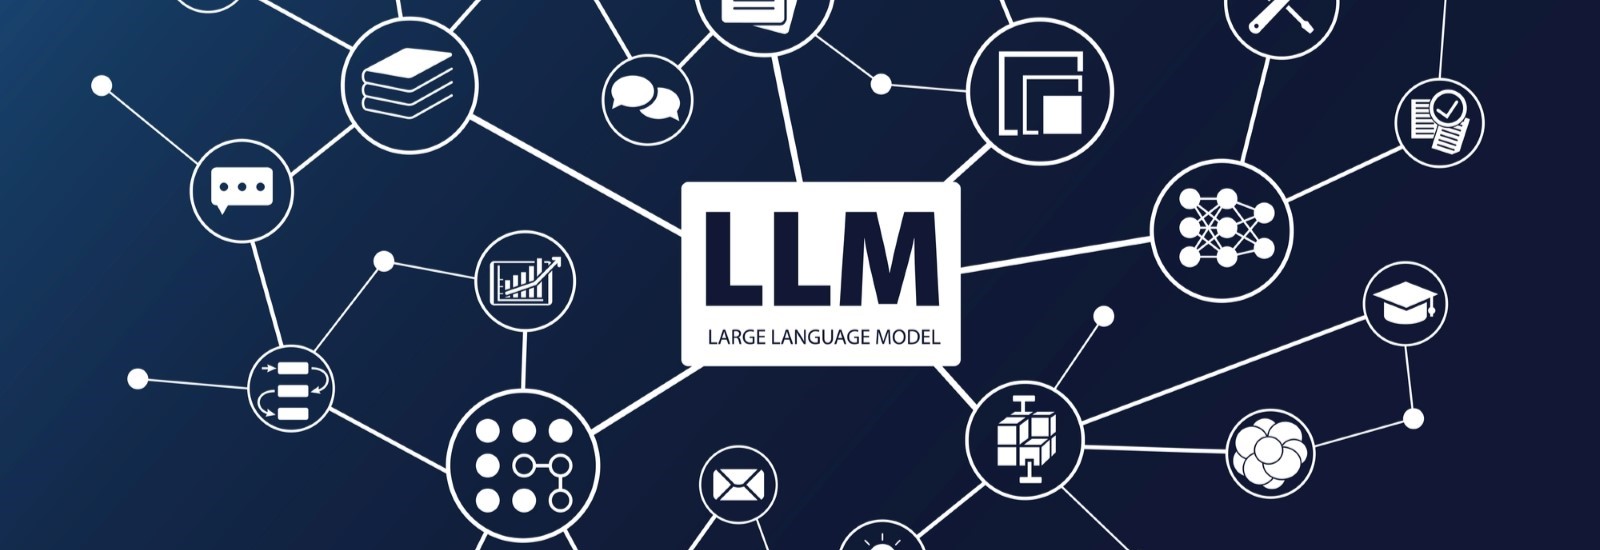 日本の大規模言語モデル「Stockmark-LLM-100b」がハルシネーションを抑制